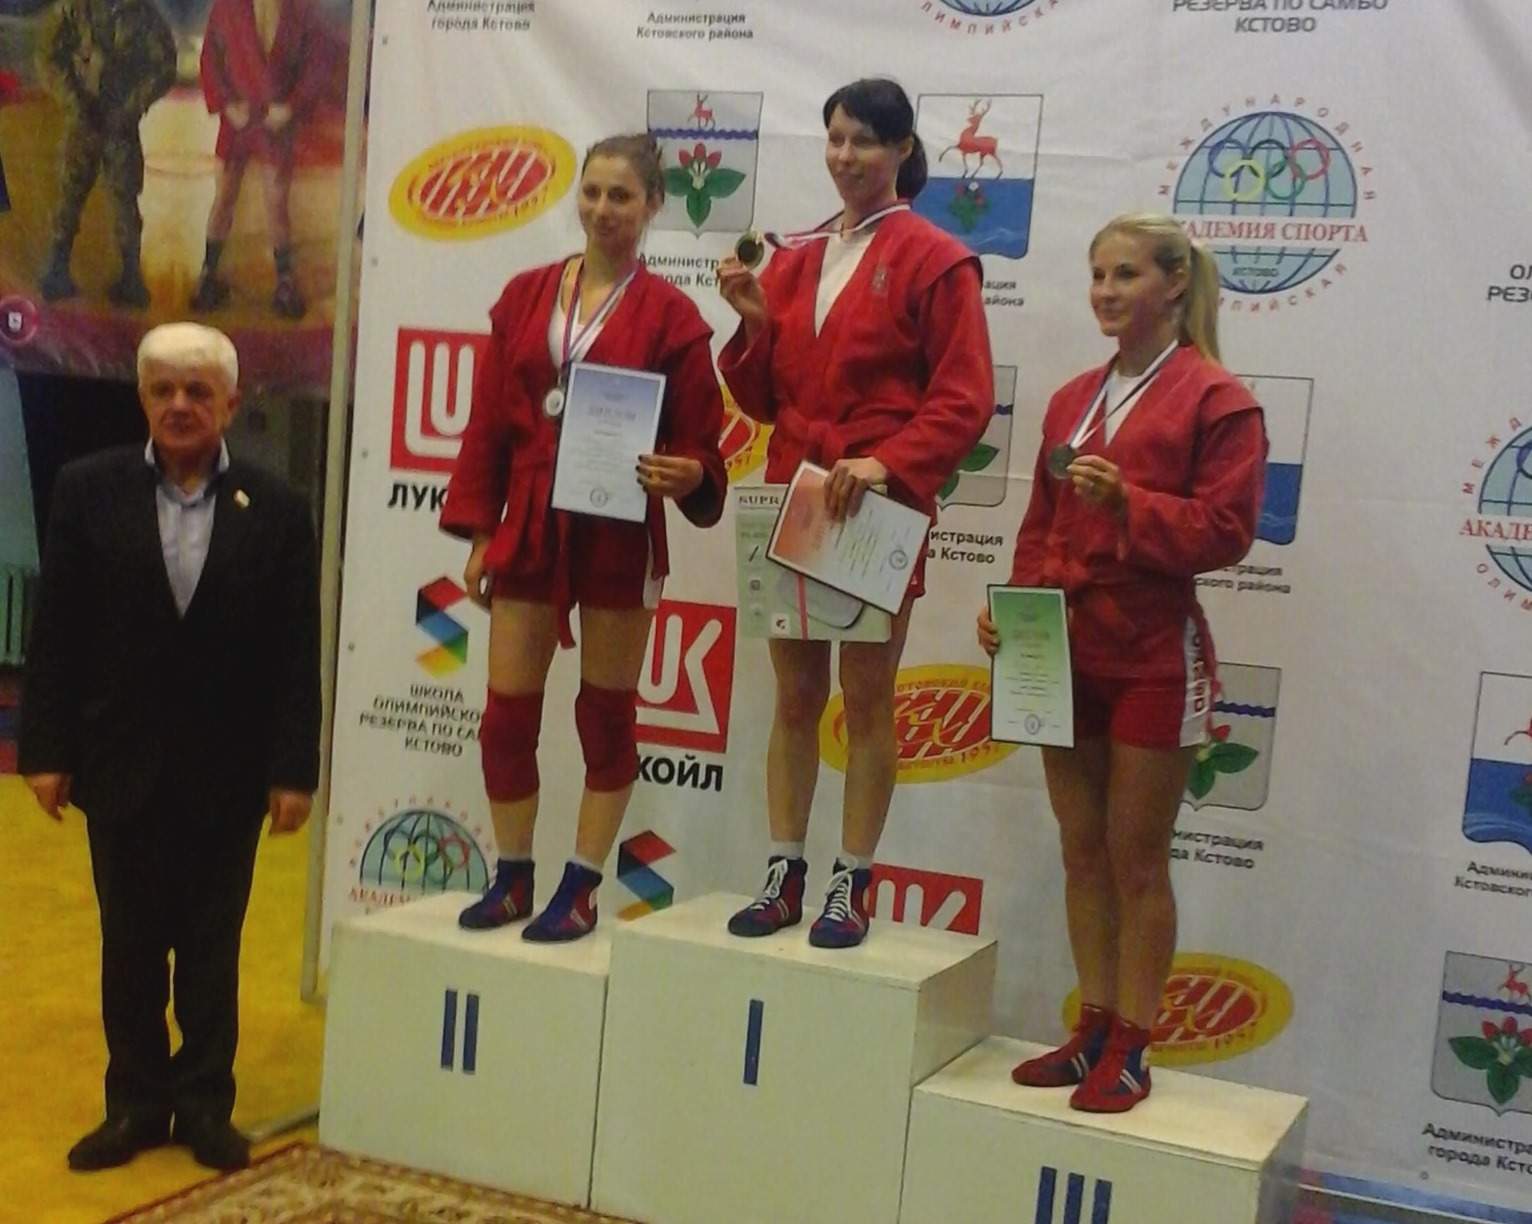 Поздравляем женскую сборную ССК ВГУЭС по самбо с «золотом» чемпионата России среди студентов!